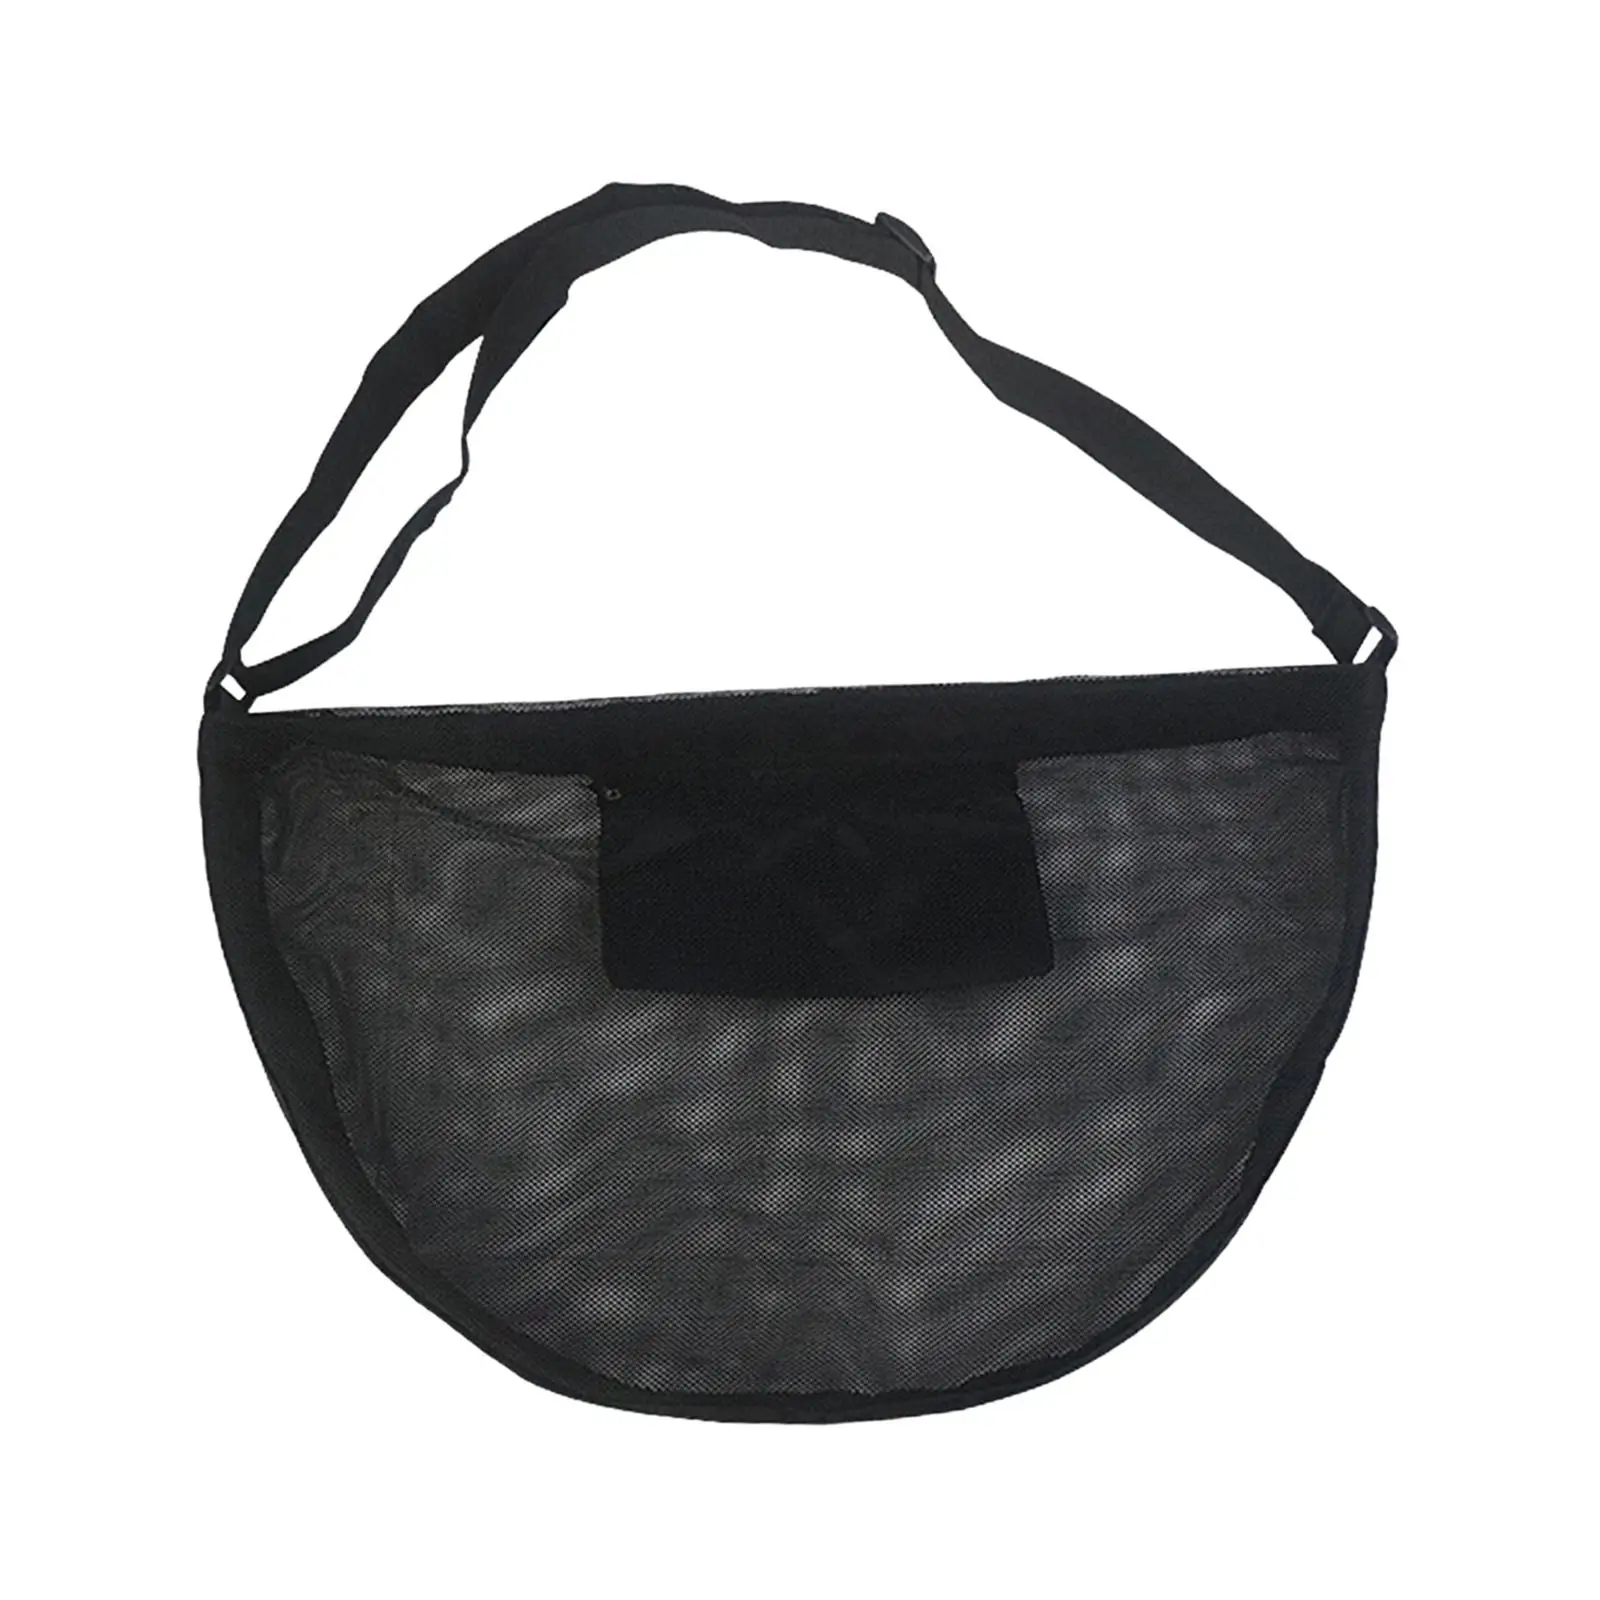 Basketball Shoulder Bag Tear Resistant Outdoor Professional Adjustable Shoulder Straps Sports Ball Bag for Football Volleyball